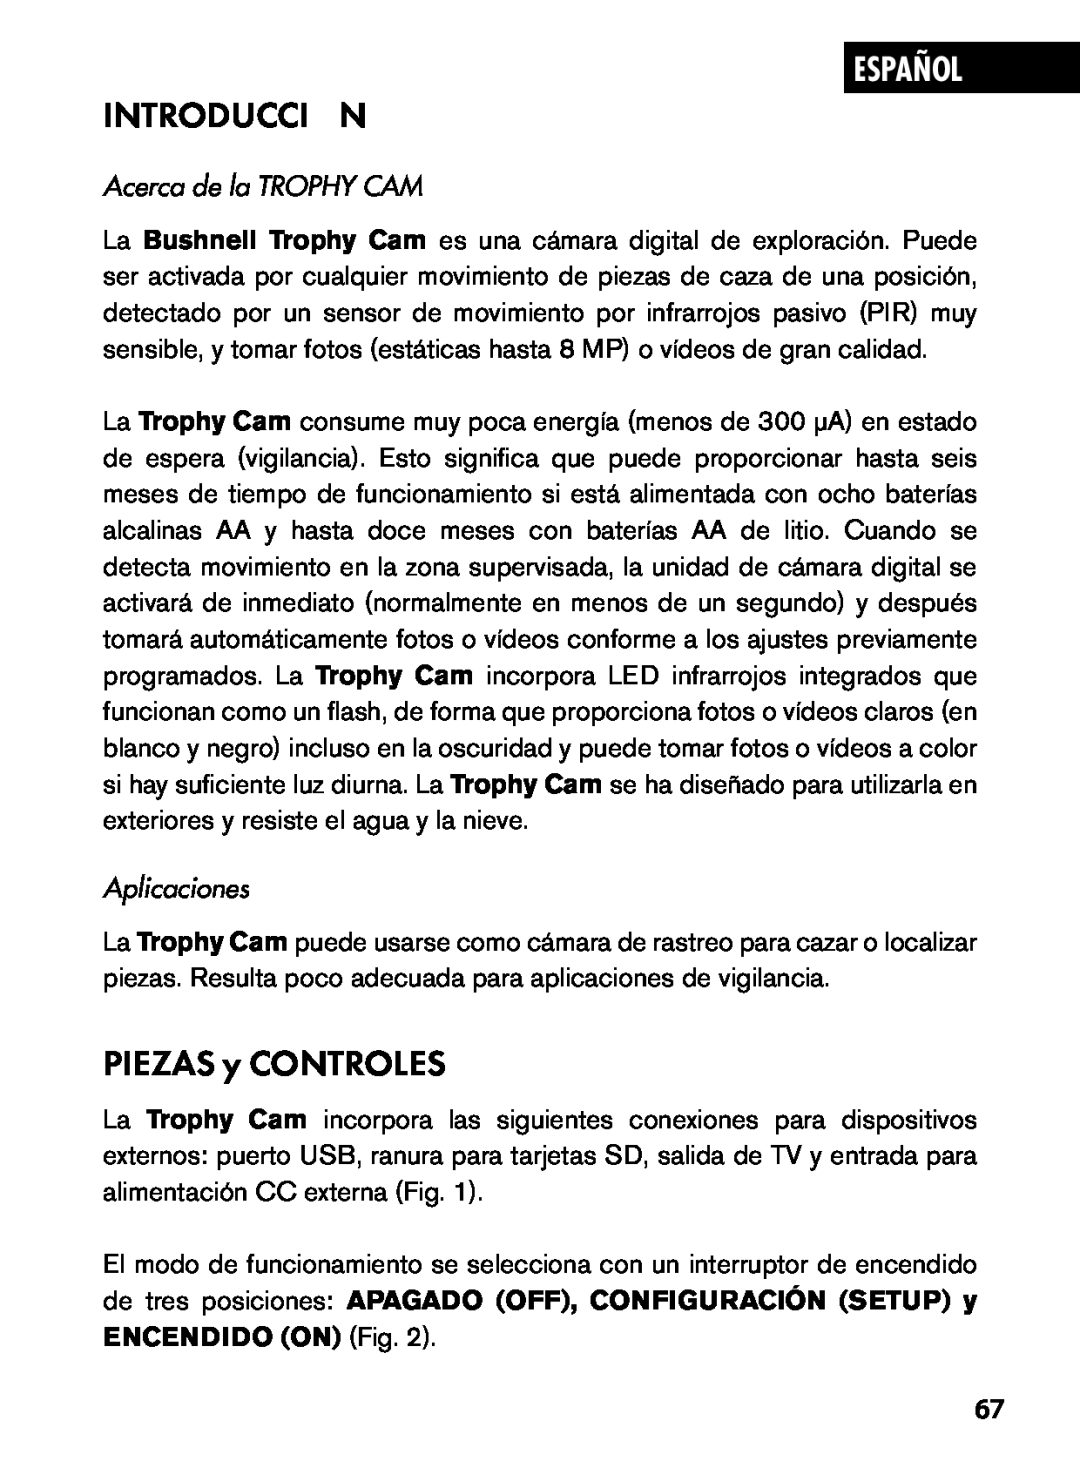 Bushnell 119445, 119455, 119435 Introducción, PIEZAS y CONTROLES, Español, Acerca de la TROPHY CAM, Aplicaciones 